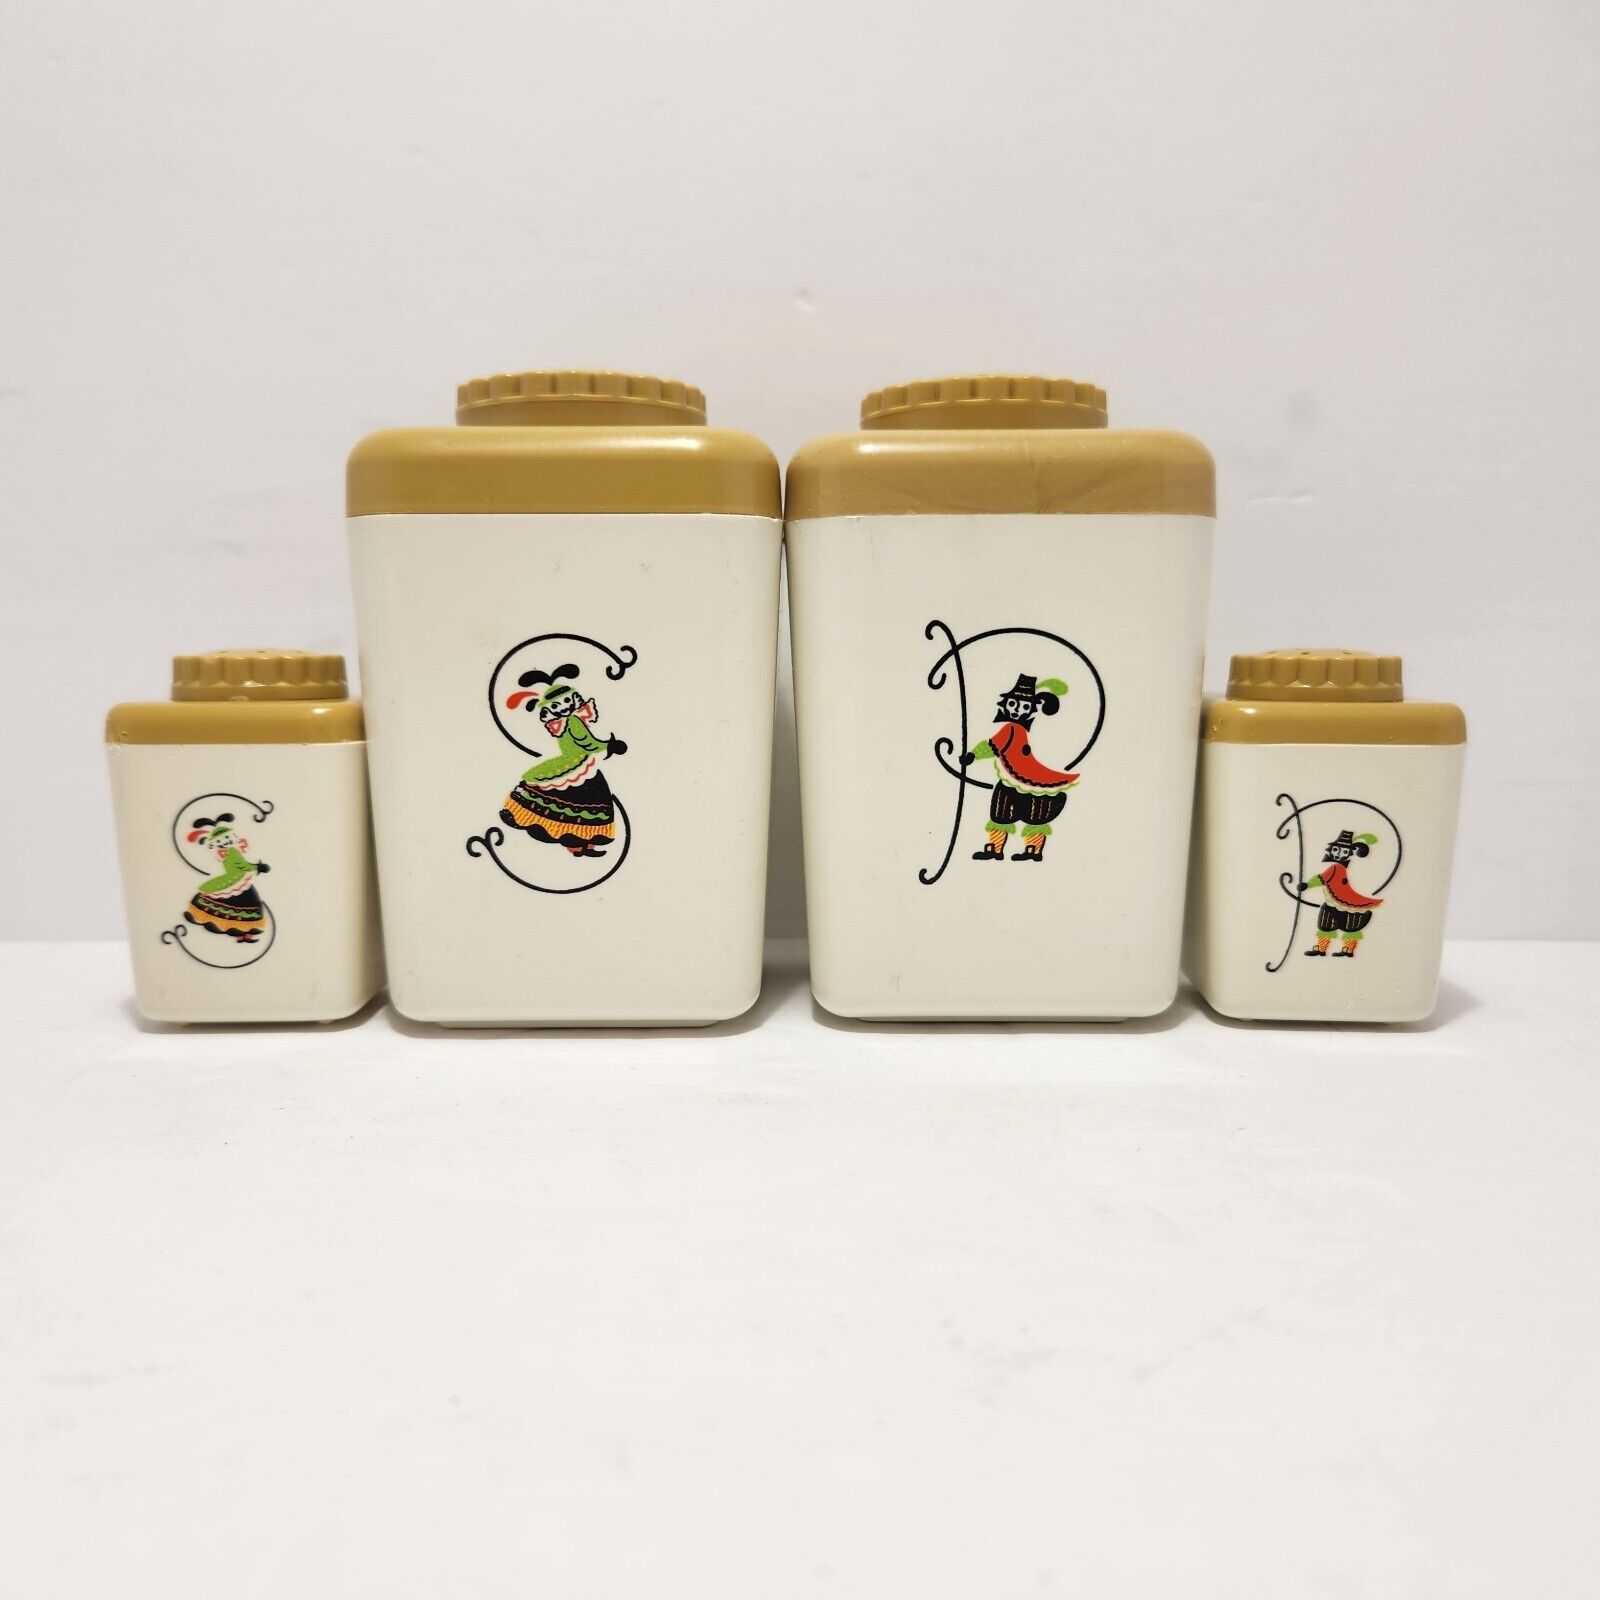 STERILITE PROVINCIAL WARE Salt Pepper Shaker Sets Plastic 1950s Vintage Kitsch